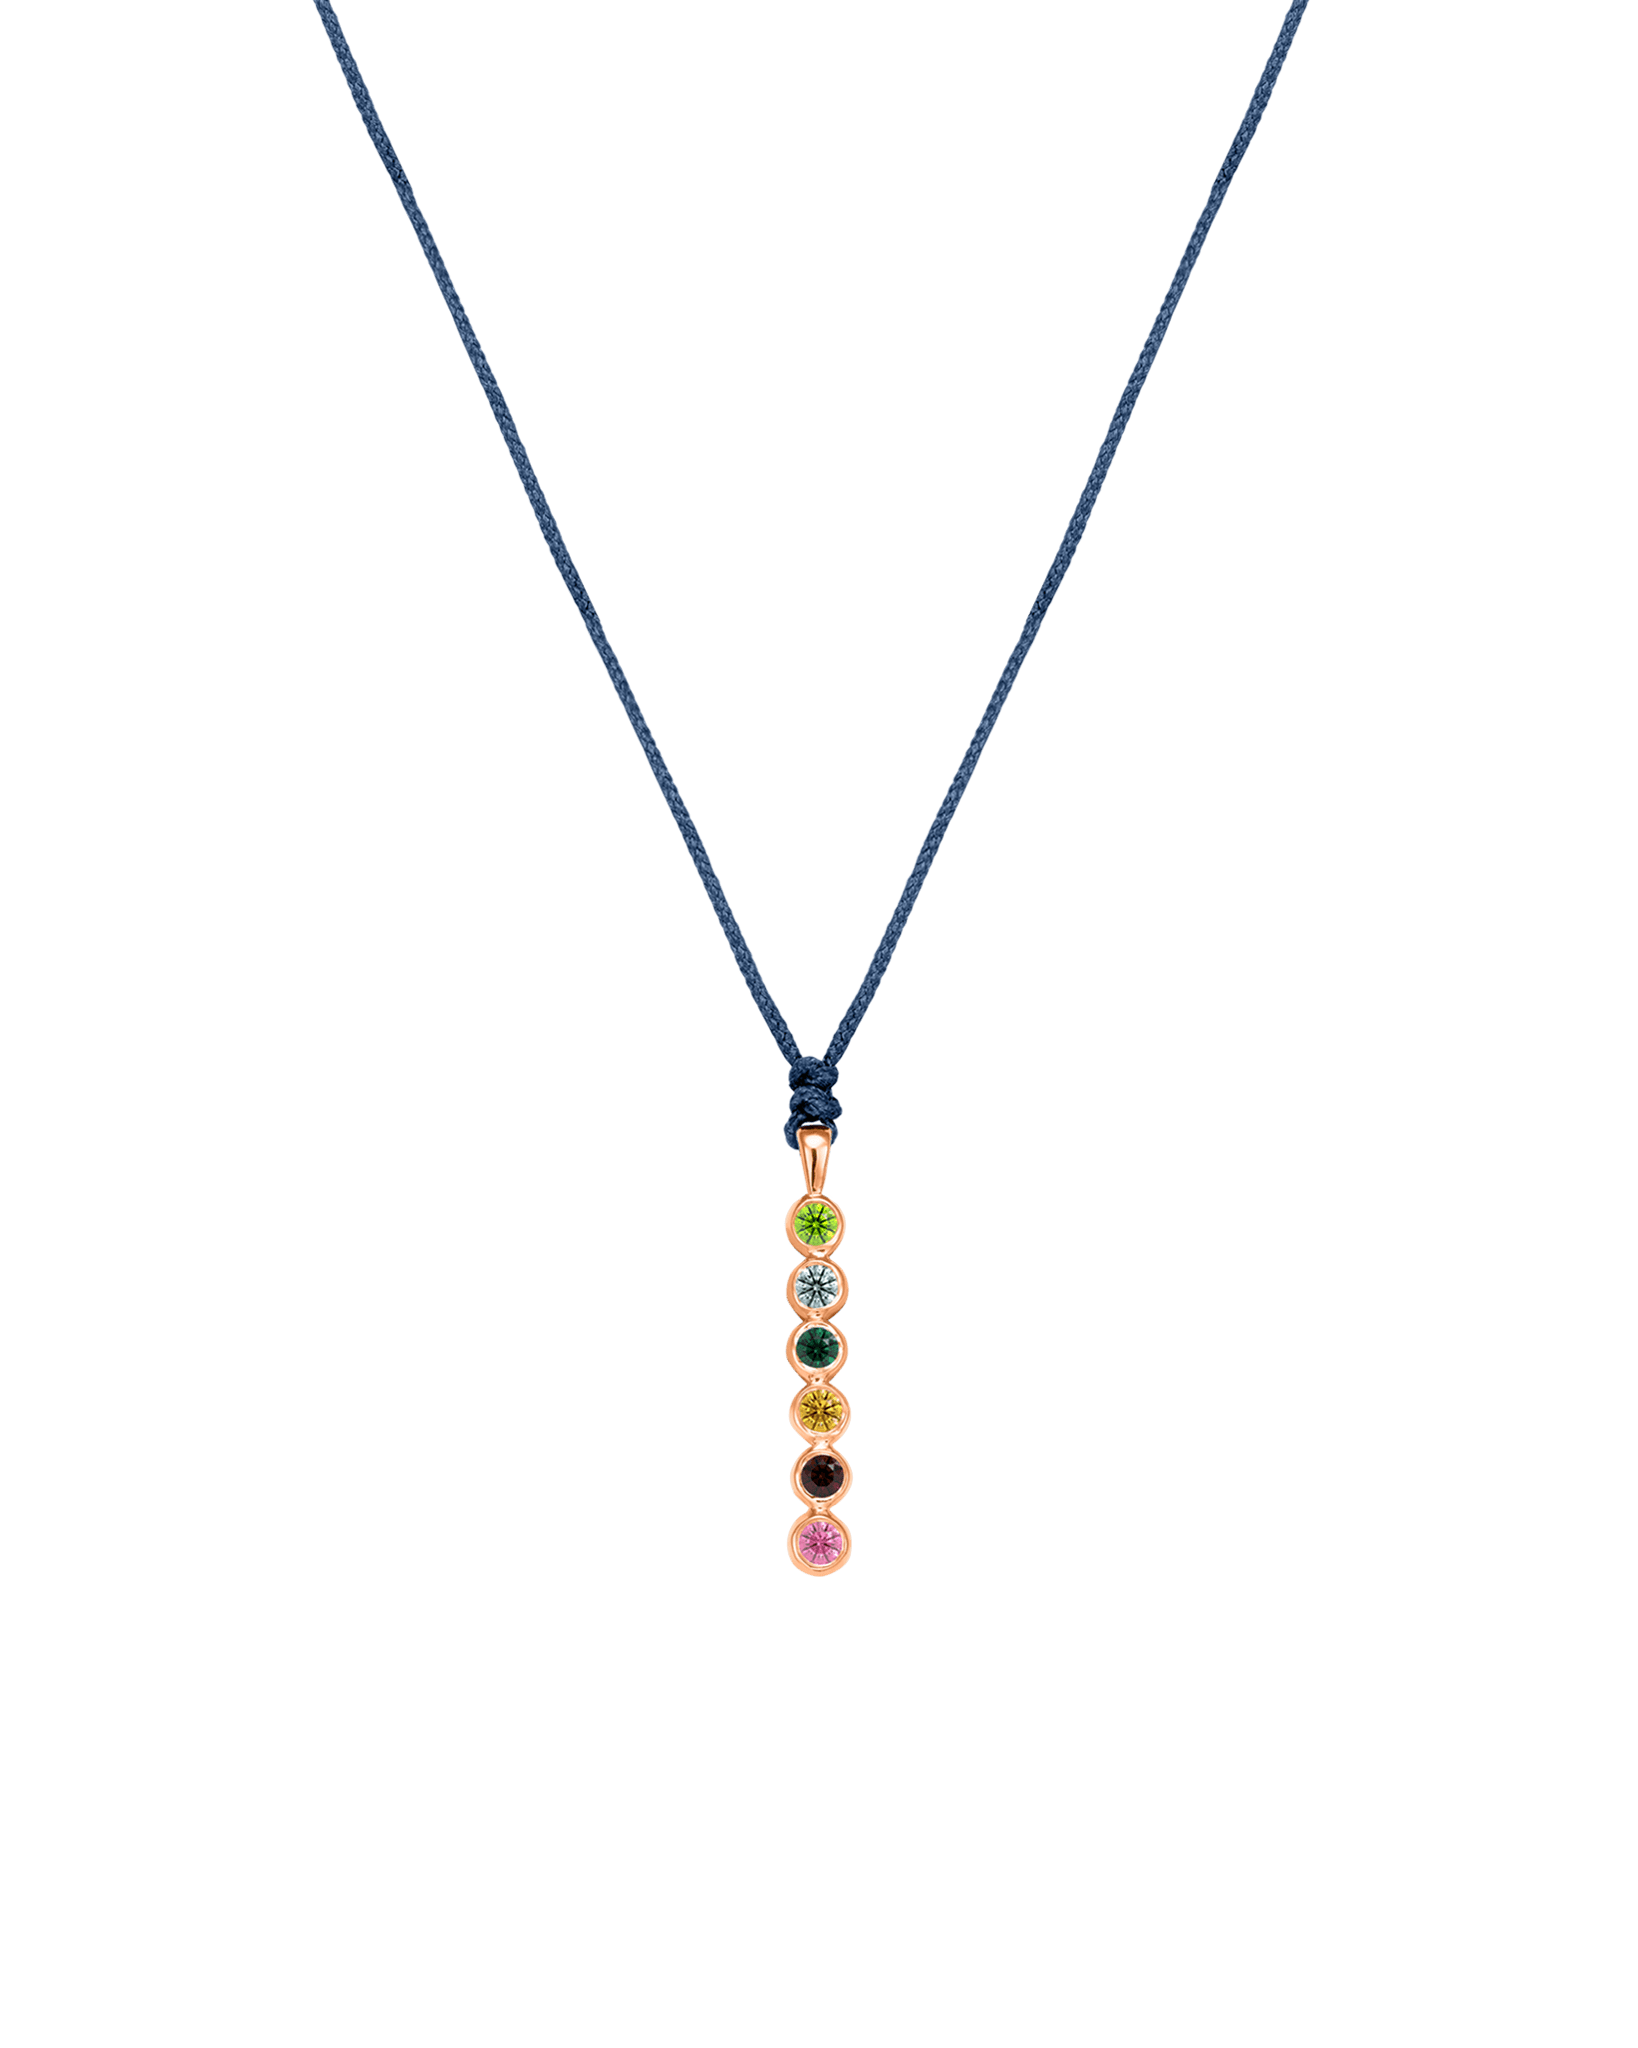 The Birthstones Bar Necklace - 14K Rose Gold Necklaces 14K Solid Gold Indigo 2 